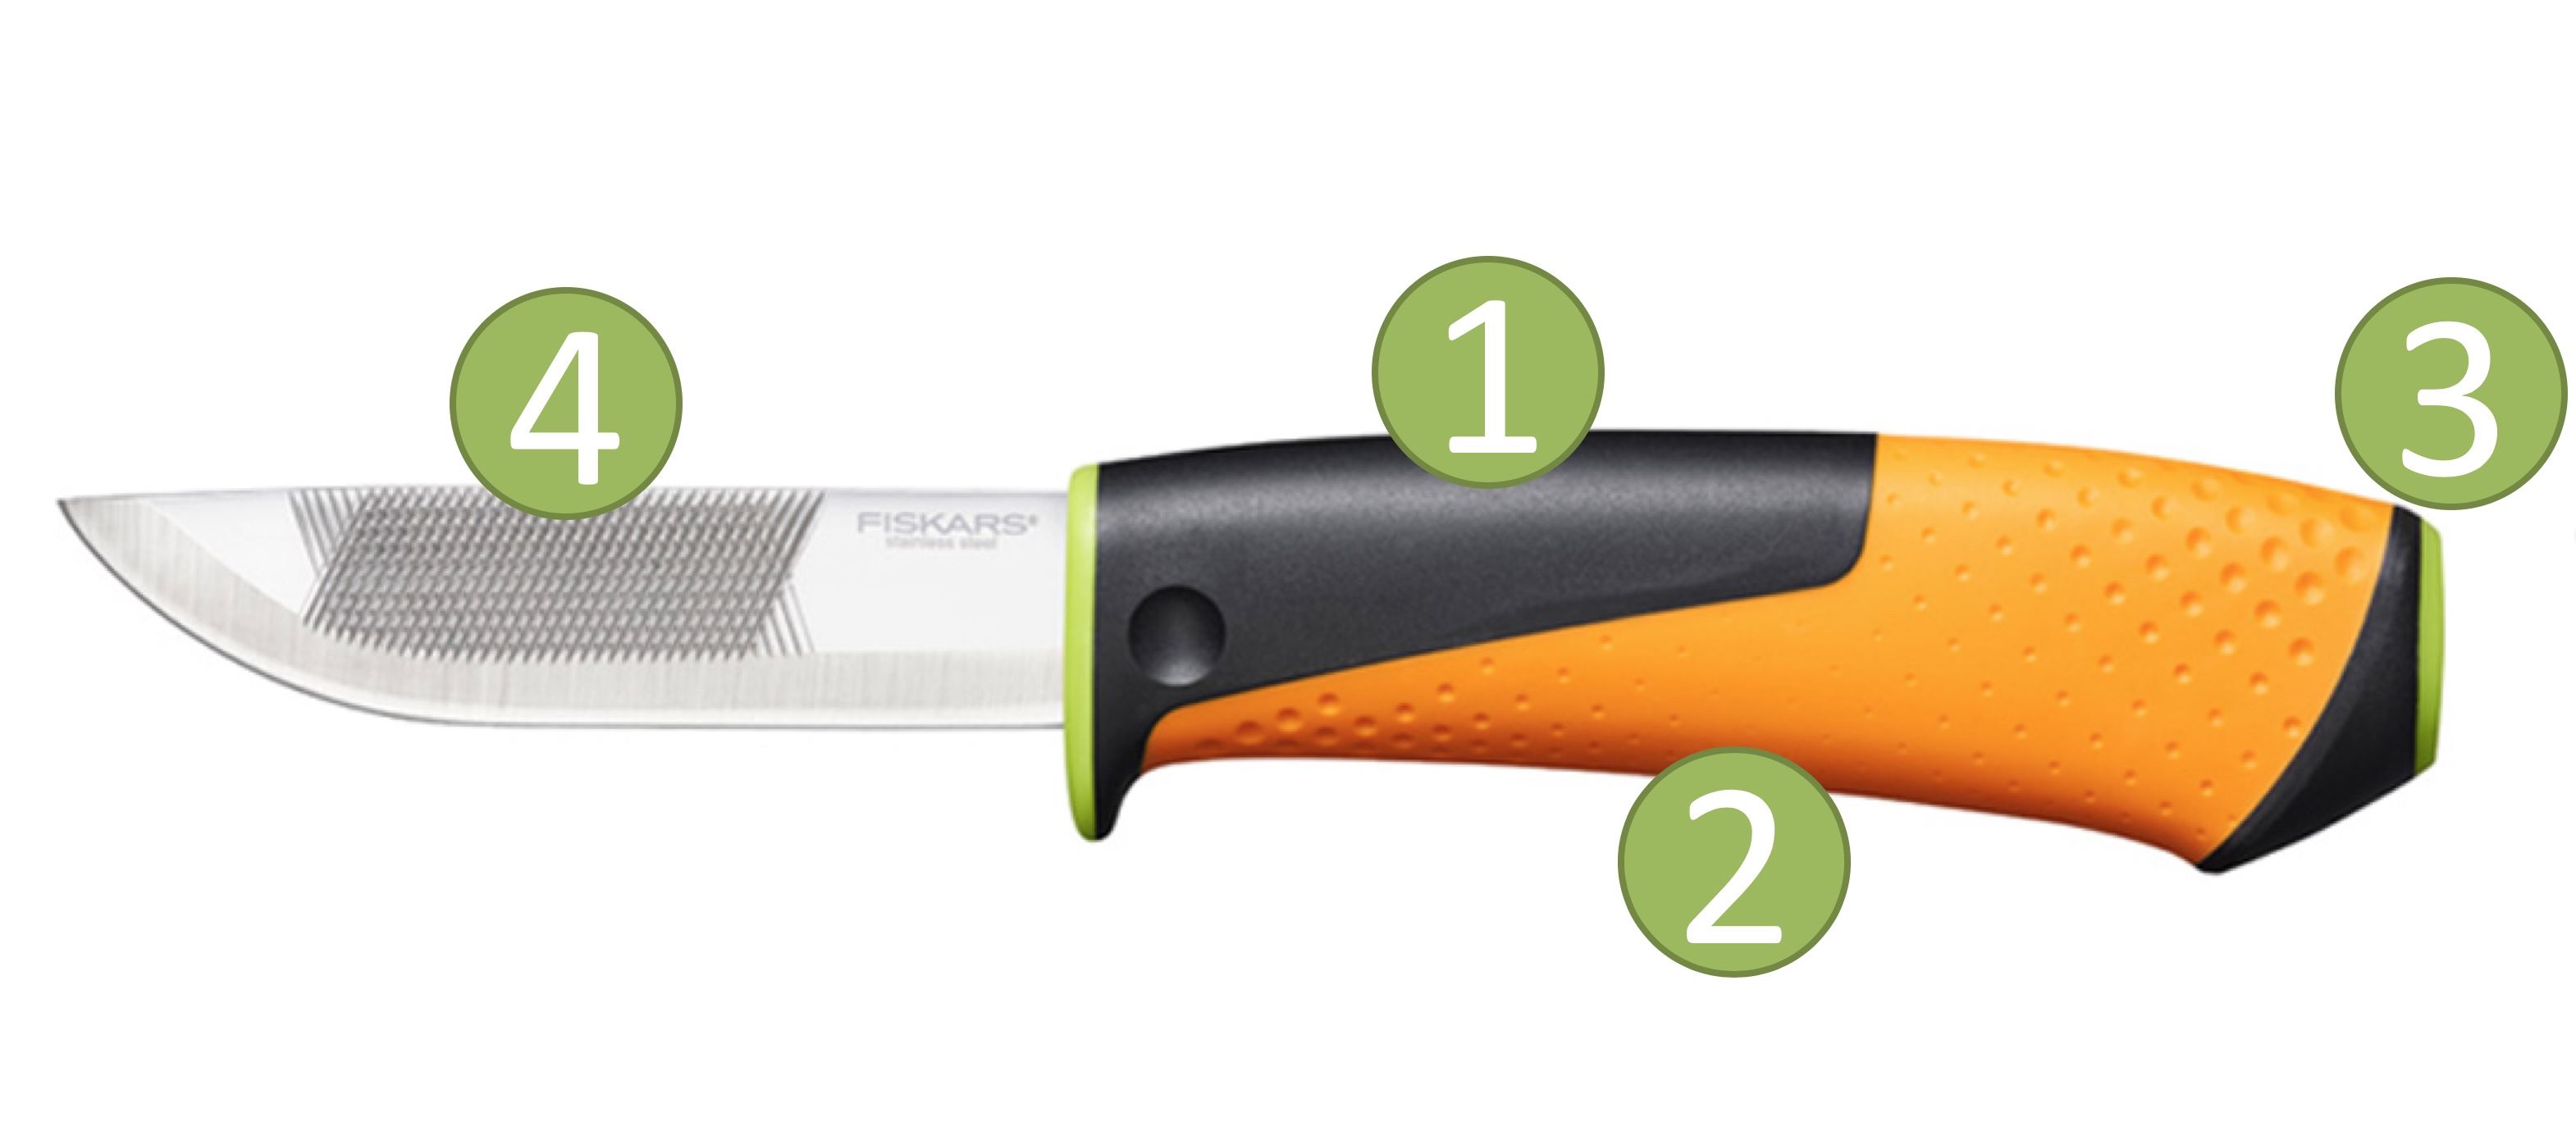 Fiskars Carpenter's knife with sharpener